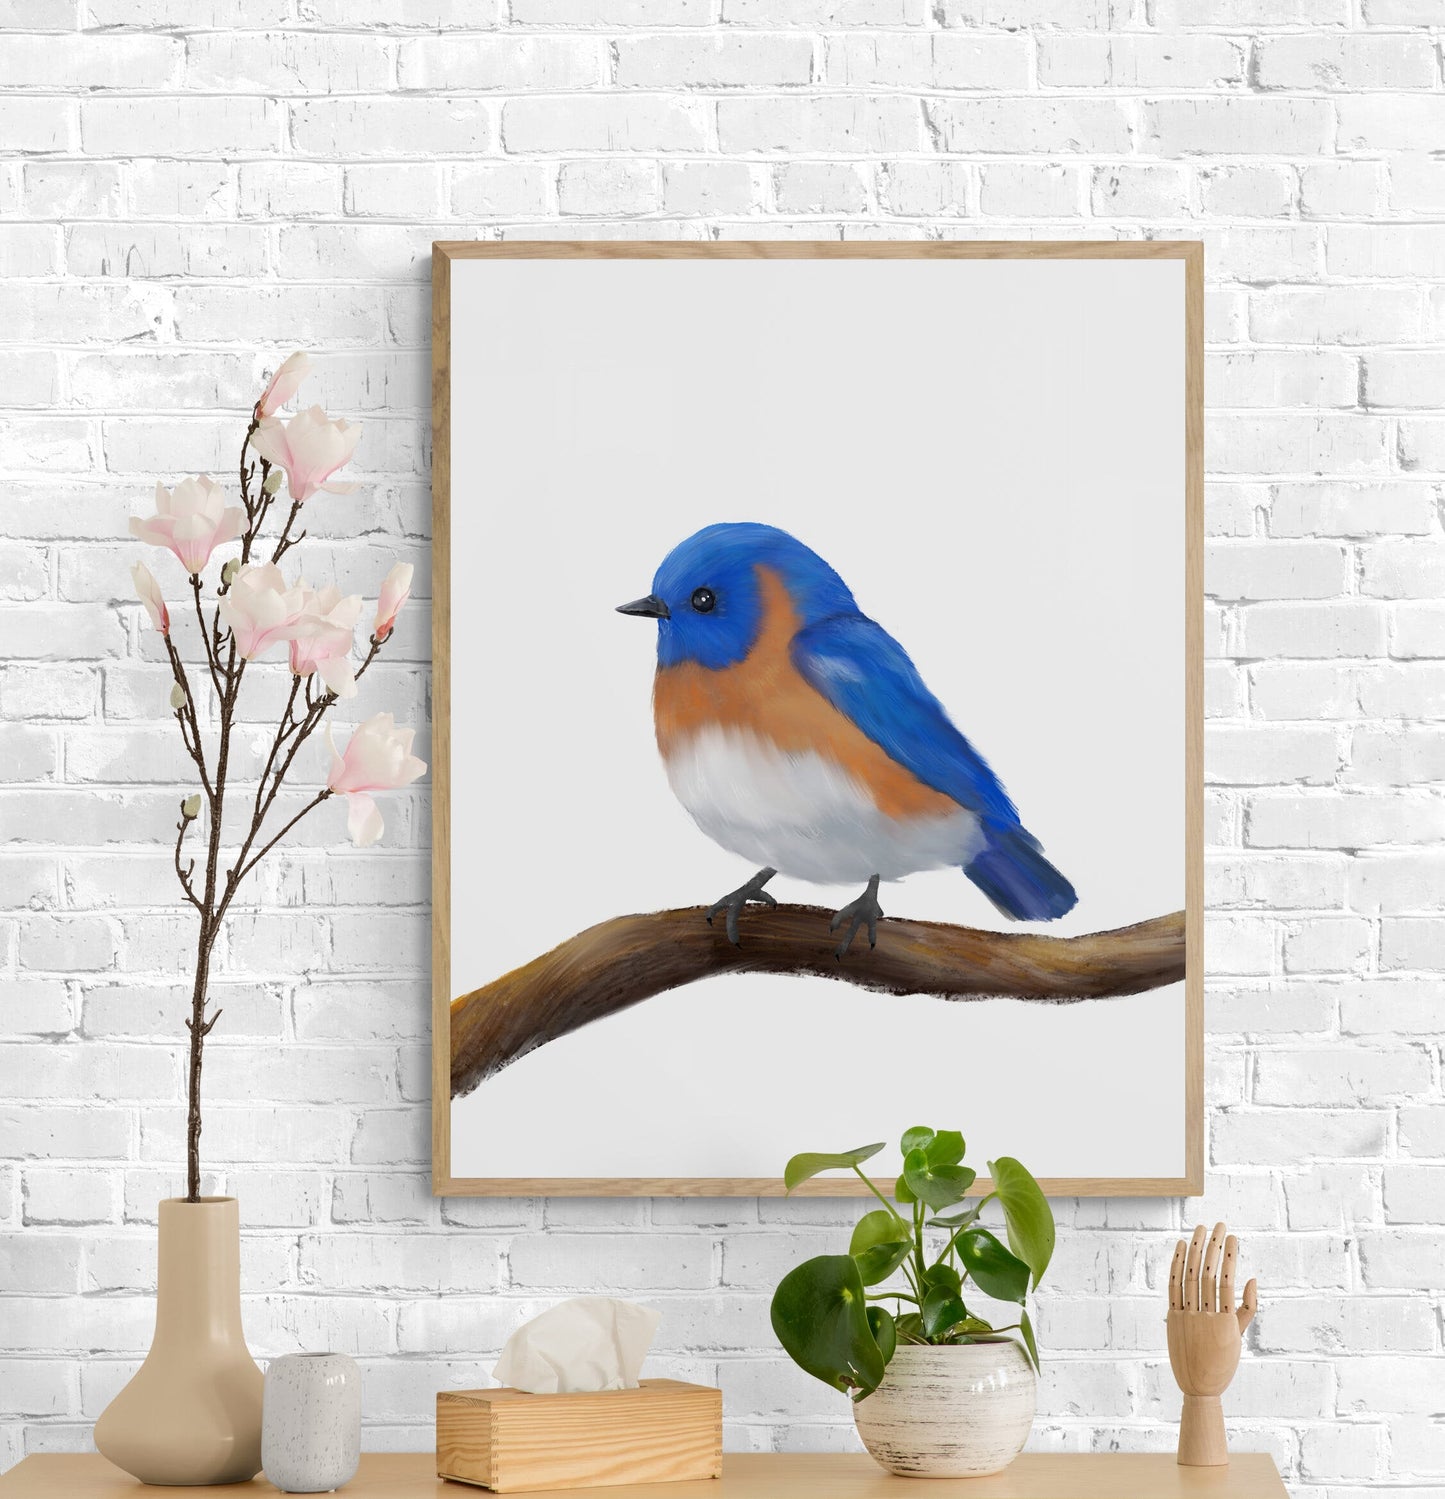 Eastern Bluebird Print, Blue Bird Painting, Holiday Print, Living Room Wall Art, Bird Print Gift, Bird Watcher Gift, Bird Lover Art